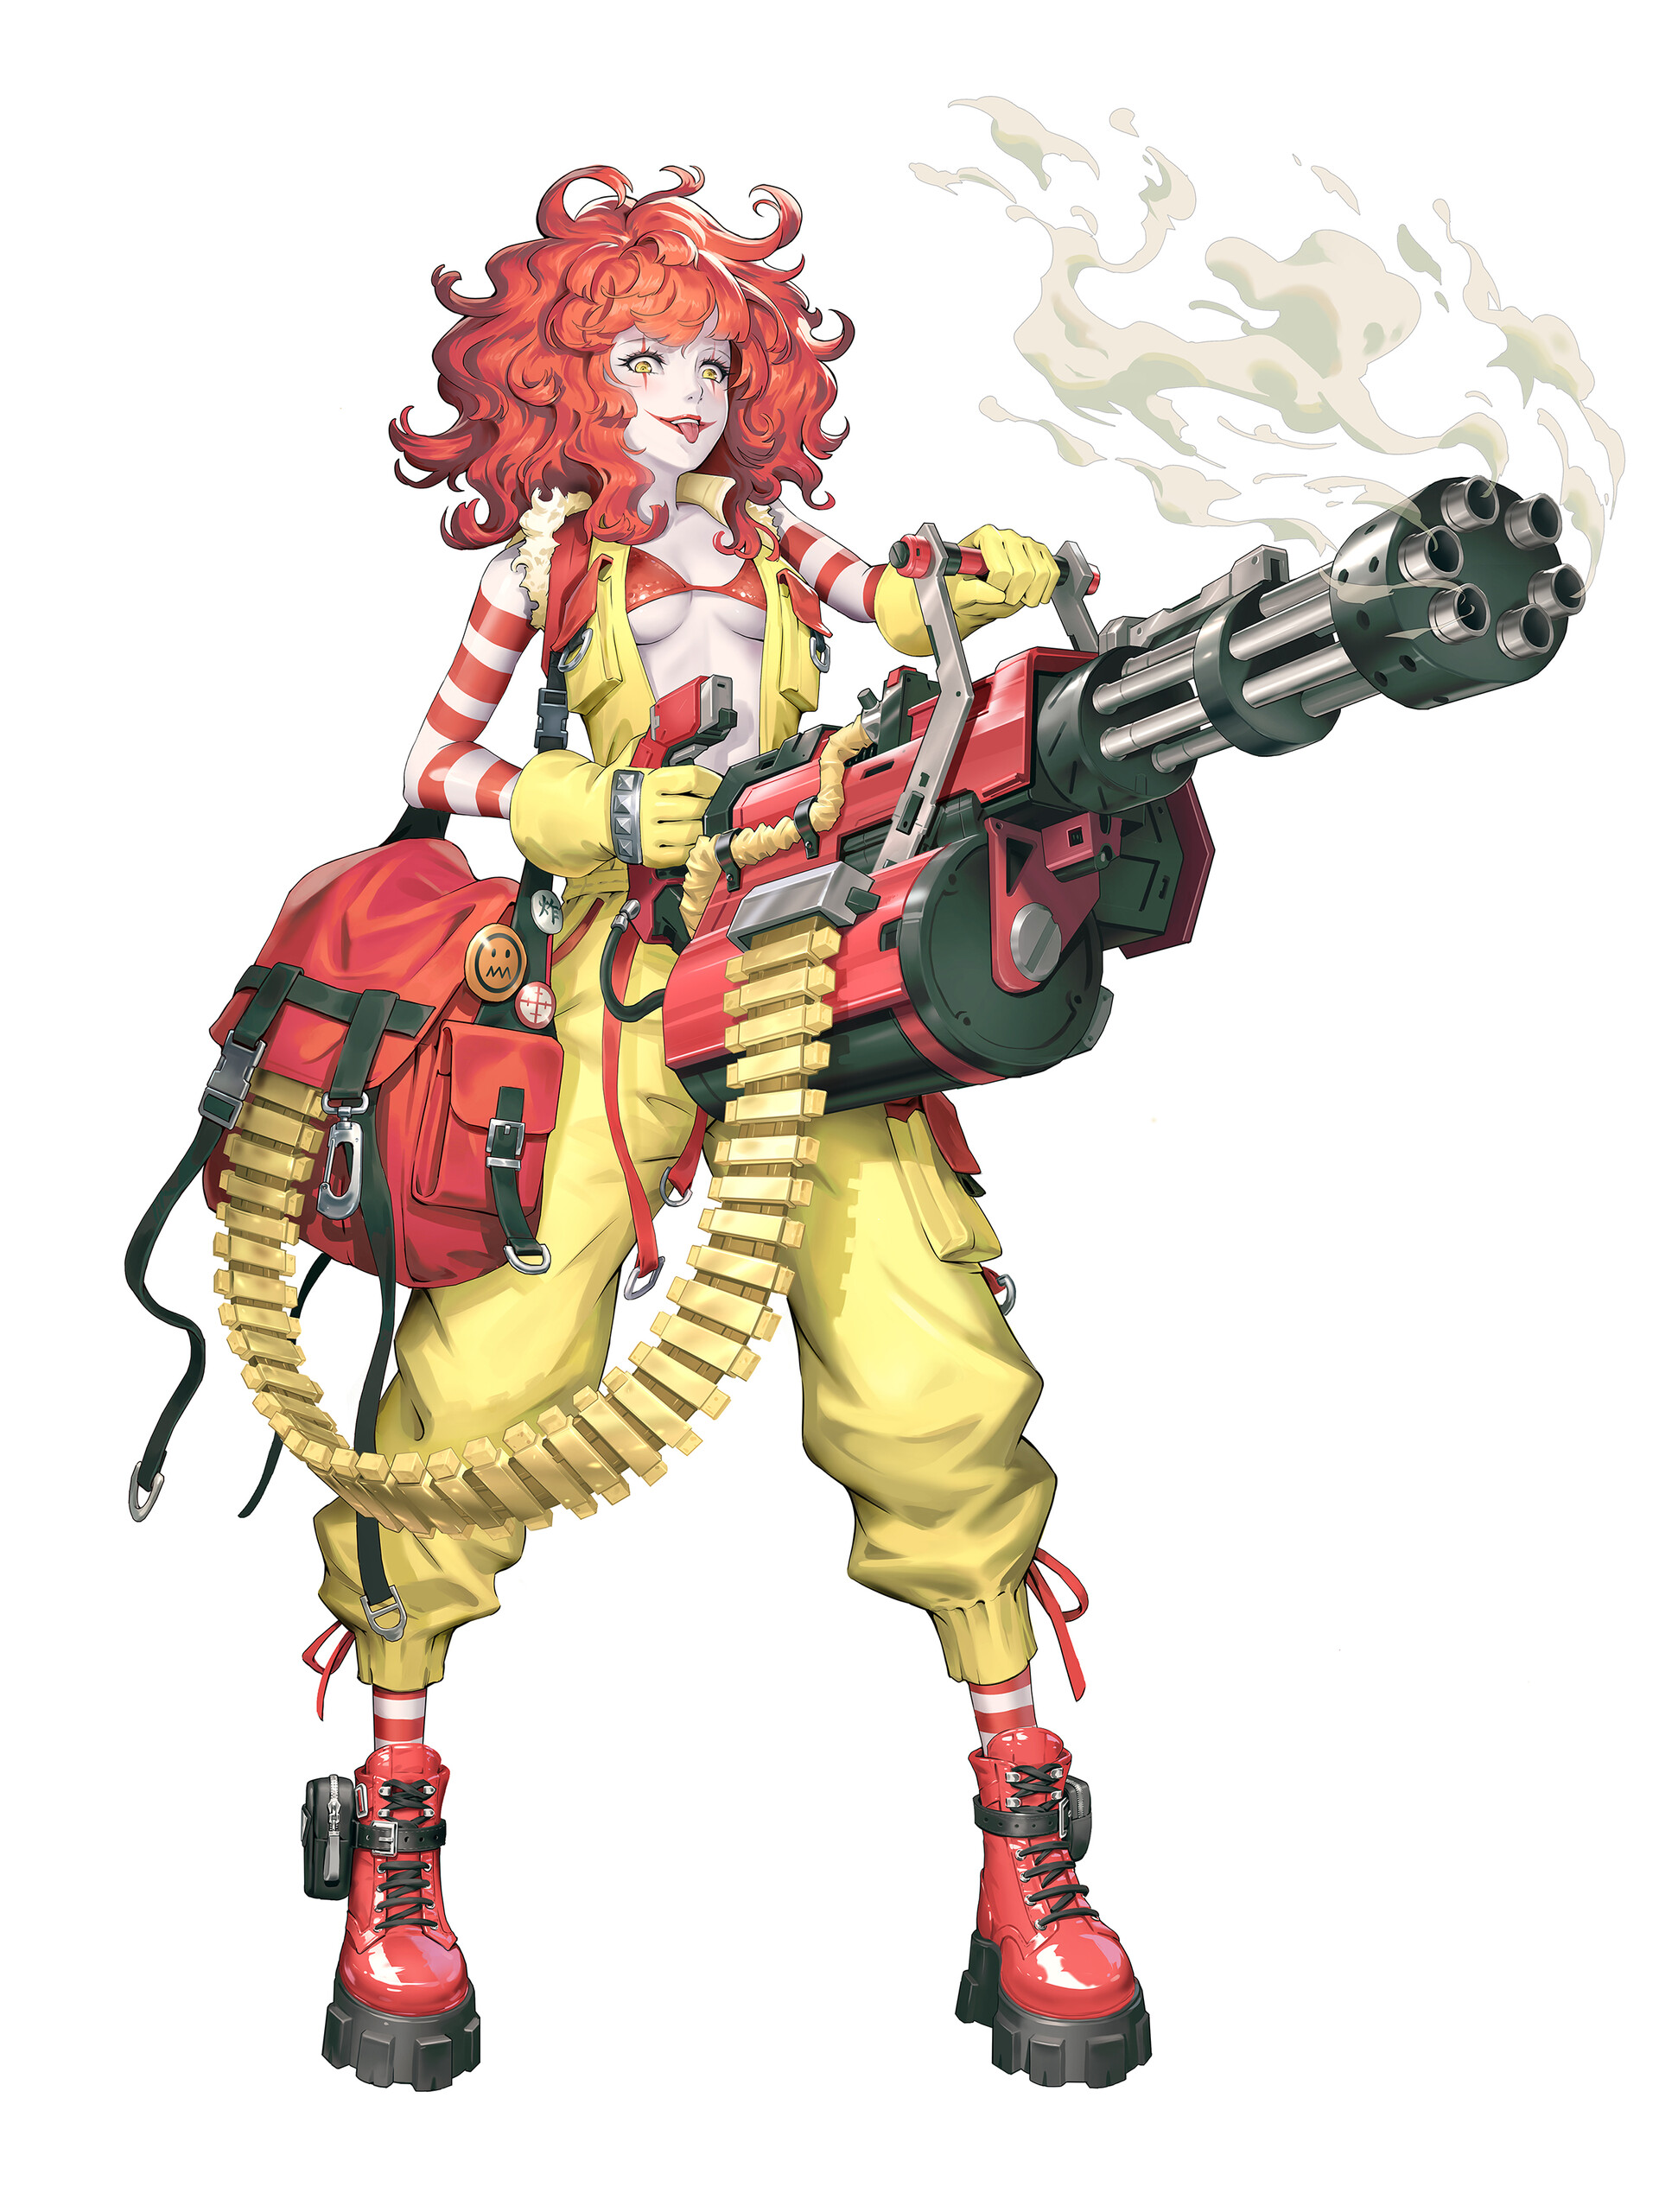 Anime 1920x2560 Wenfei Ye drawing anime girls clown redhead chain guns machine gun weapon face paint boots smoke backpacks